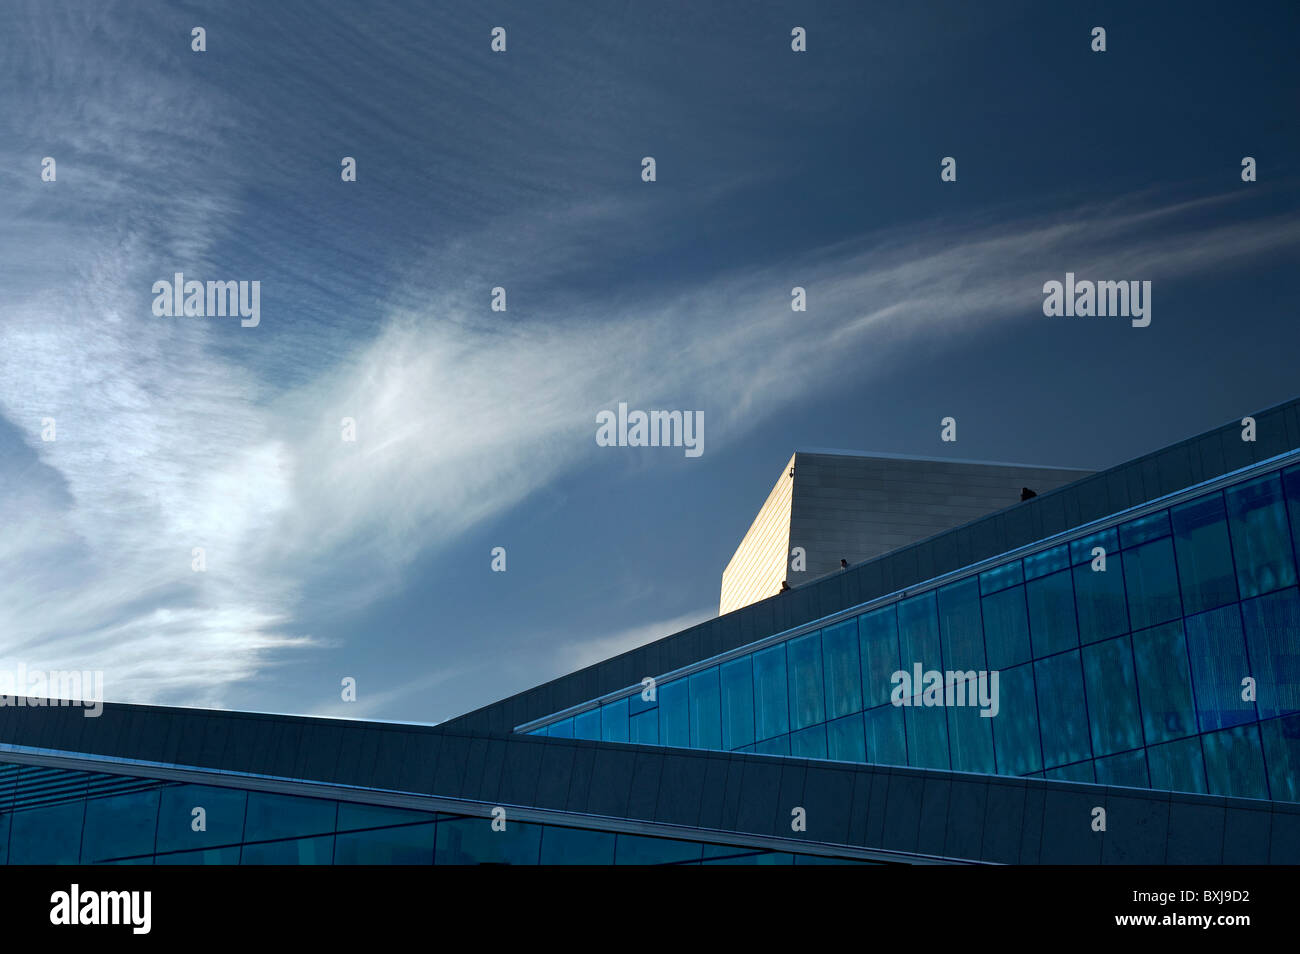 Vue panoramique de l'Opéra d'Oslo Norvège Banque D'Images